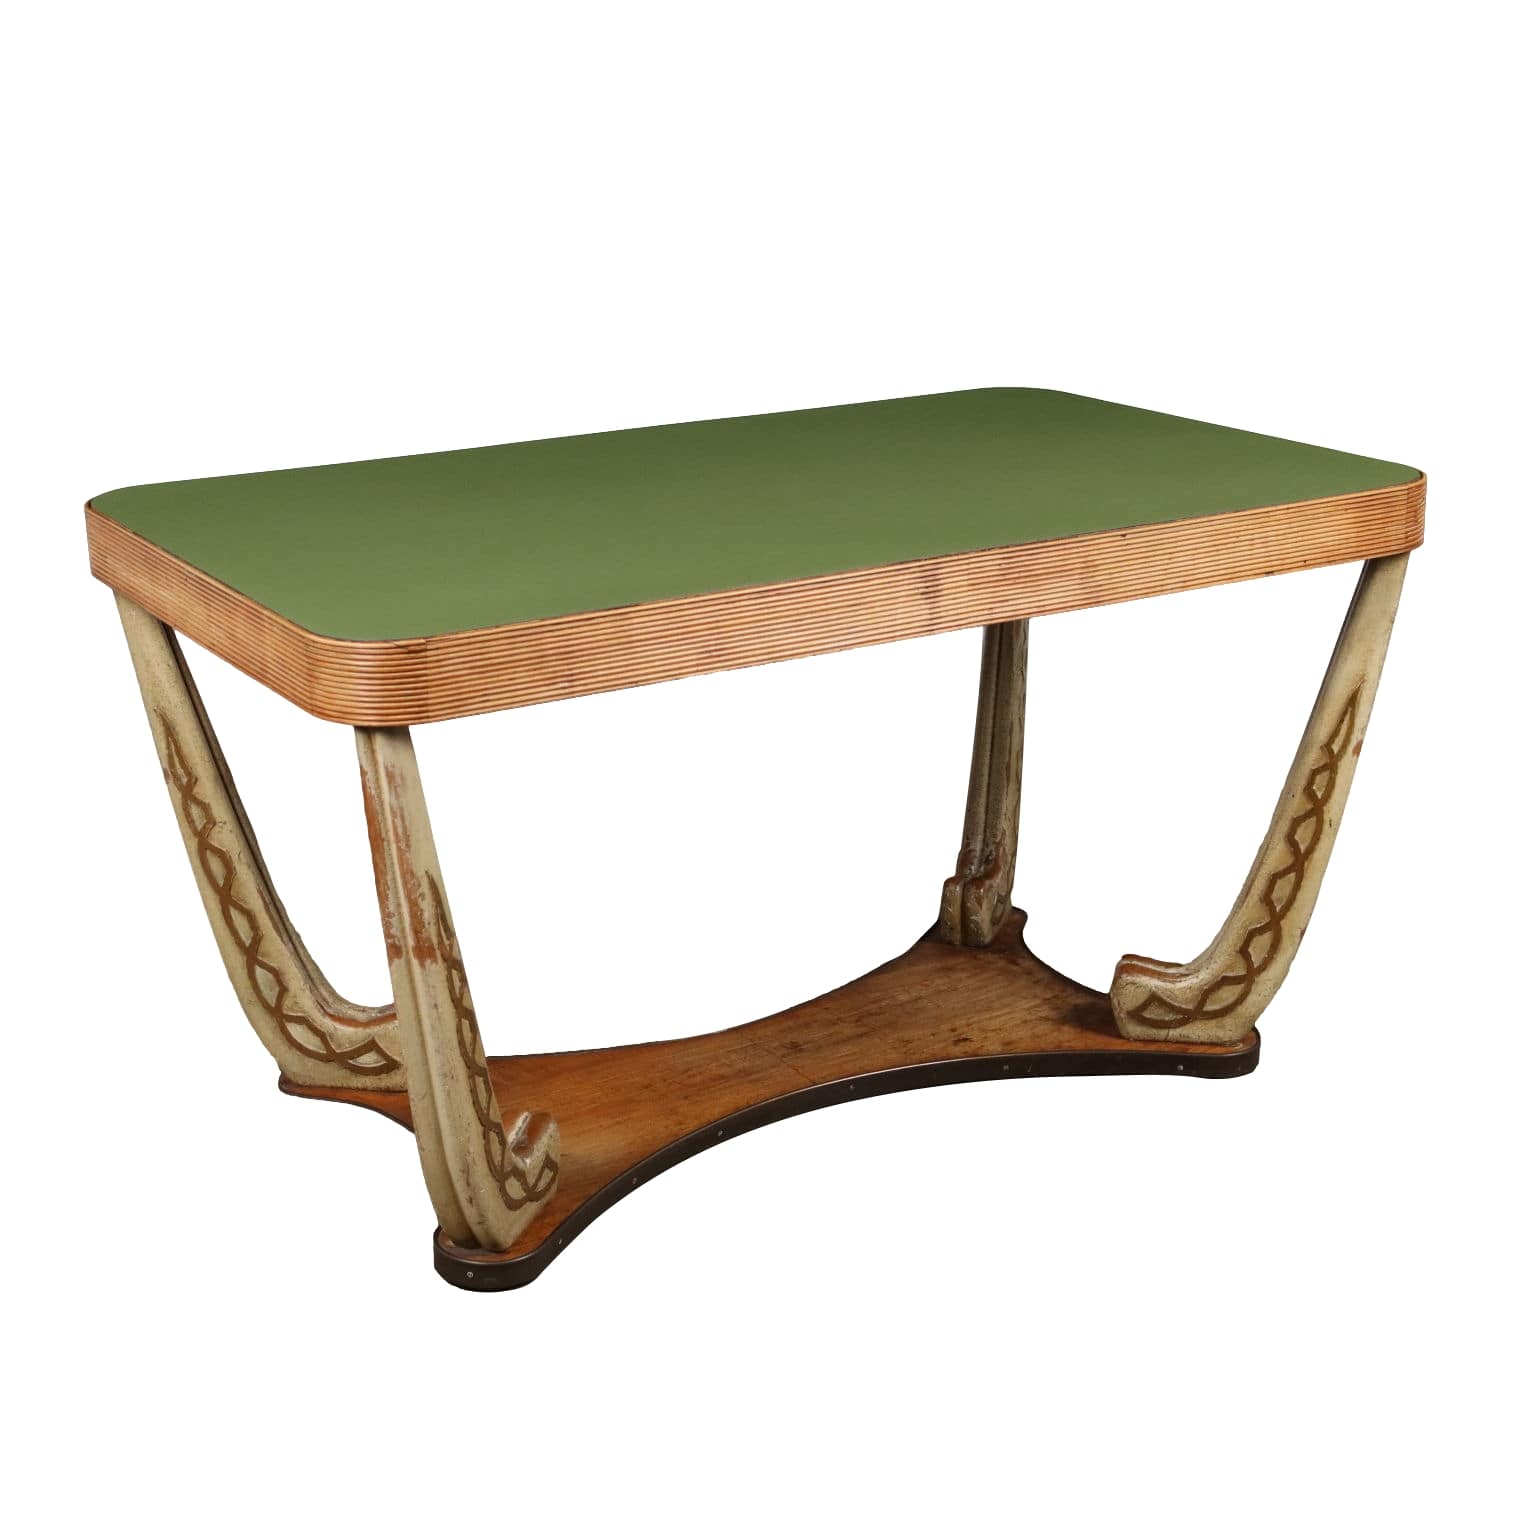 Tavolo pieghevole in legno con gambe in ferro in vendita su Pamono